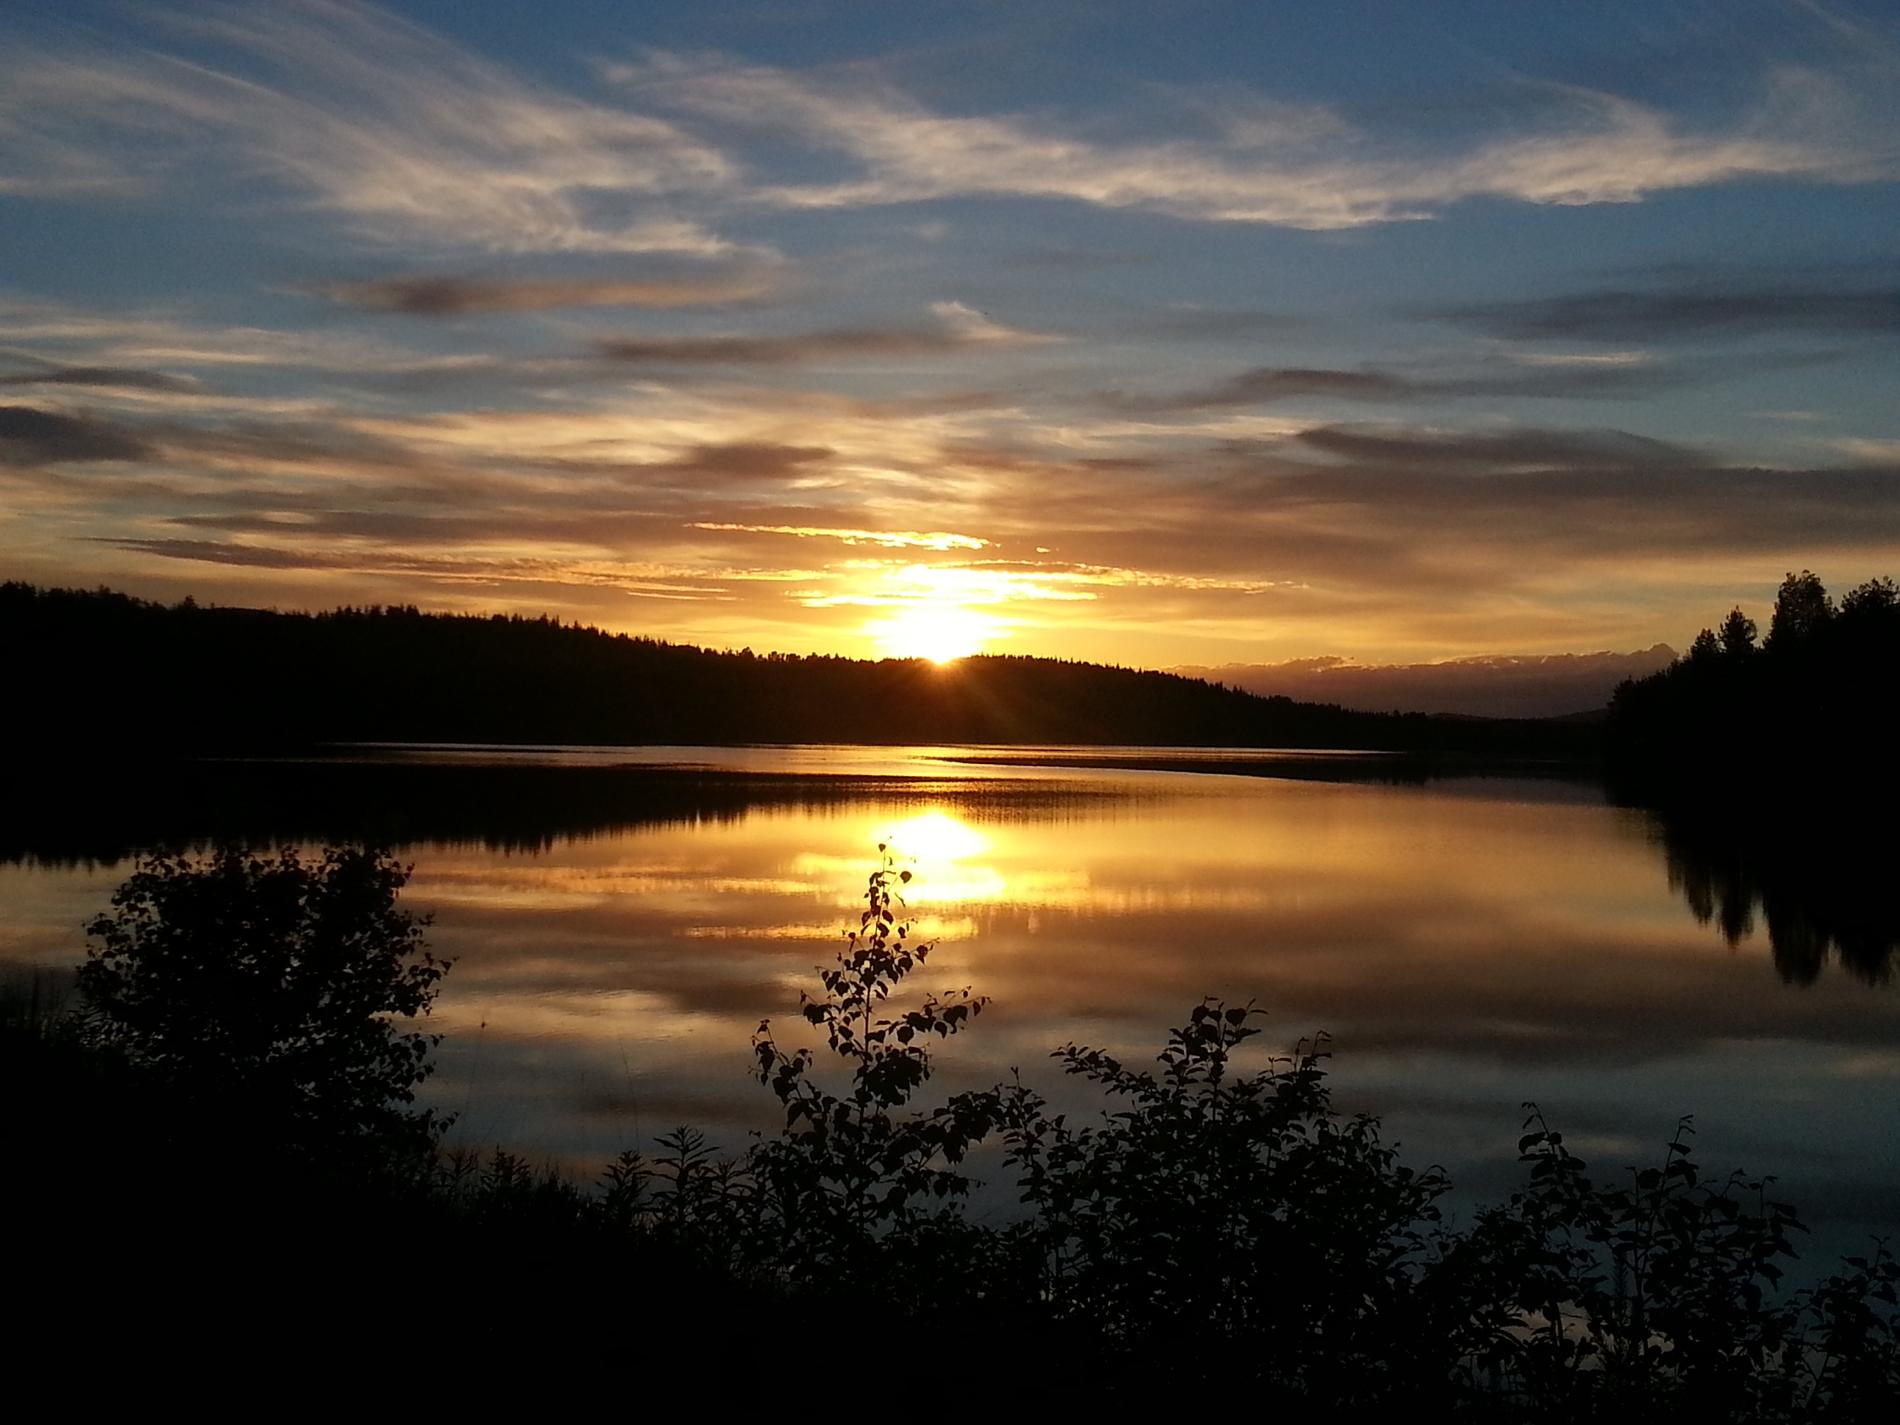 Ytterligare en fantastiskt vacker solnedgång från våra läsare.